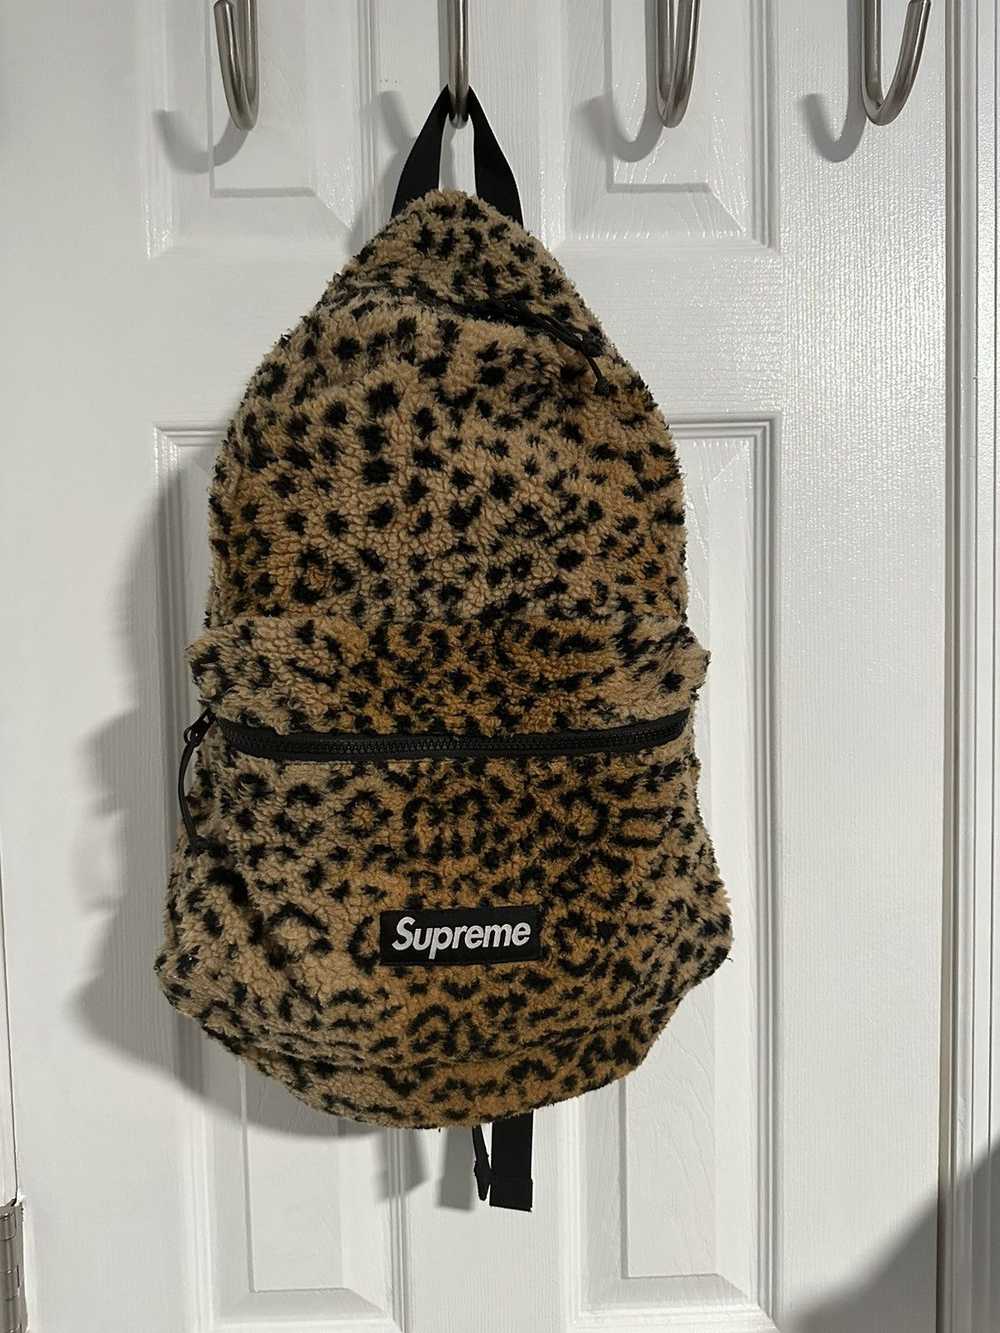 Supreme Supreme Leopard Fleece Backpack FW17 - image 1